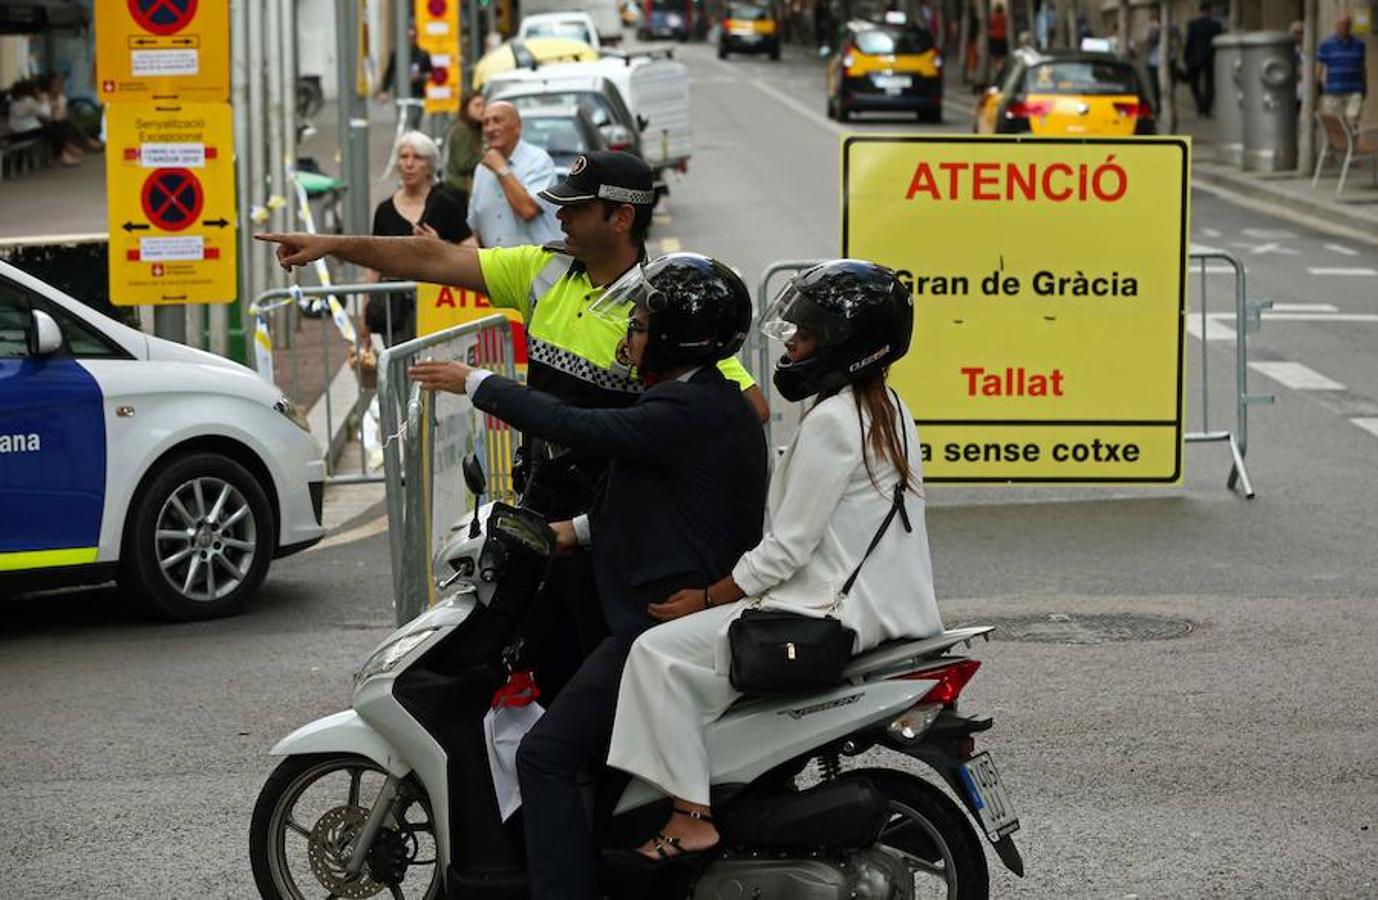 En Barcelona 54 calles han sido cortadas al tráfico y dos vías principales, la Vía Laietana y la calle Gran de Gracia